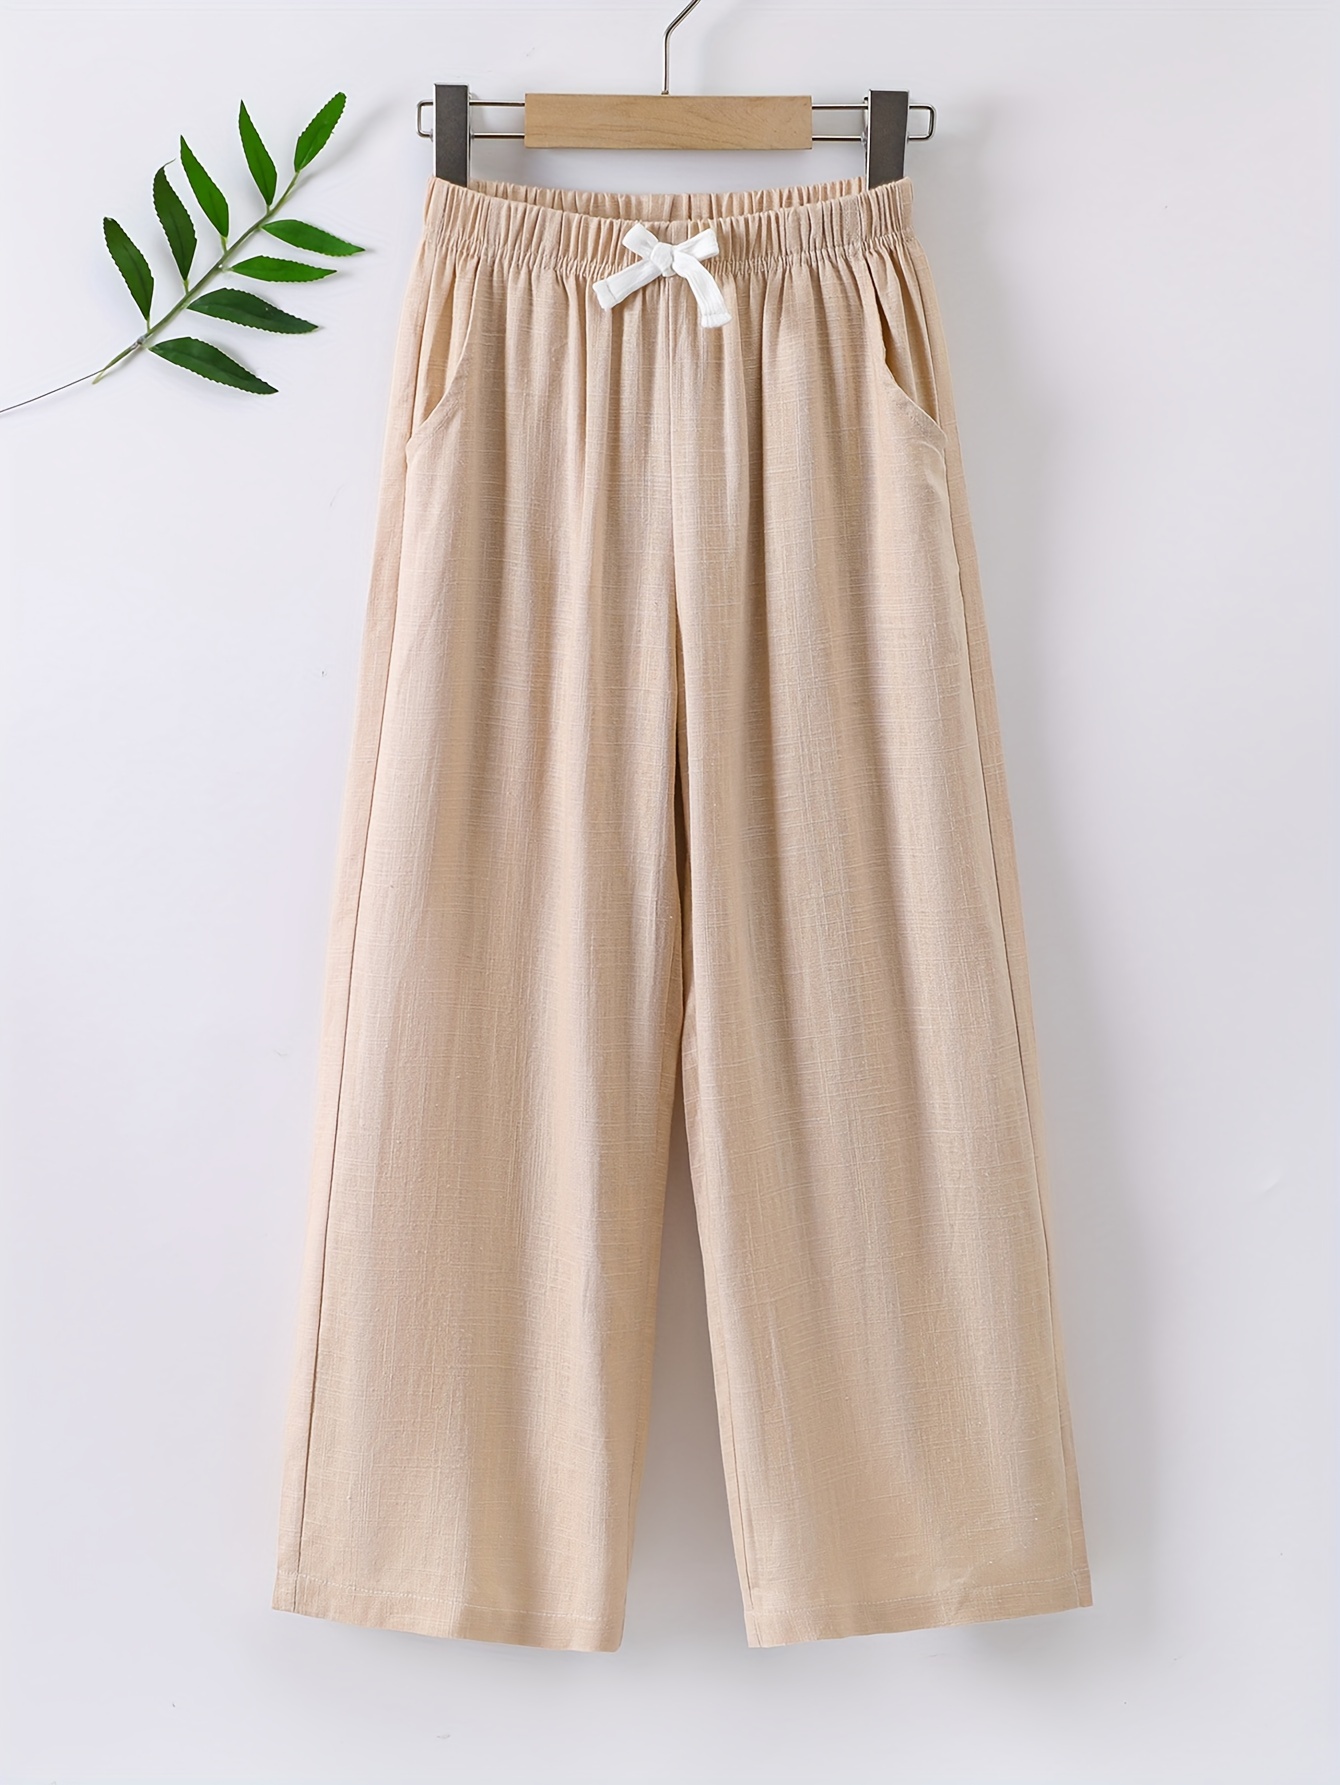 Cotton Linen Pants for Women Elastic Waist Drawstring Plain Capri Pants  Casual Baggy Summer Beach Capris Trousers